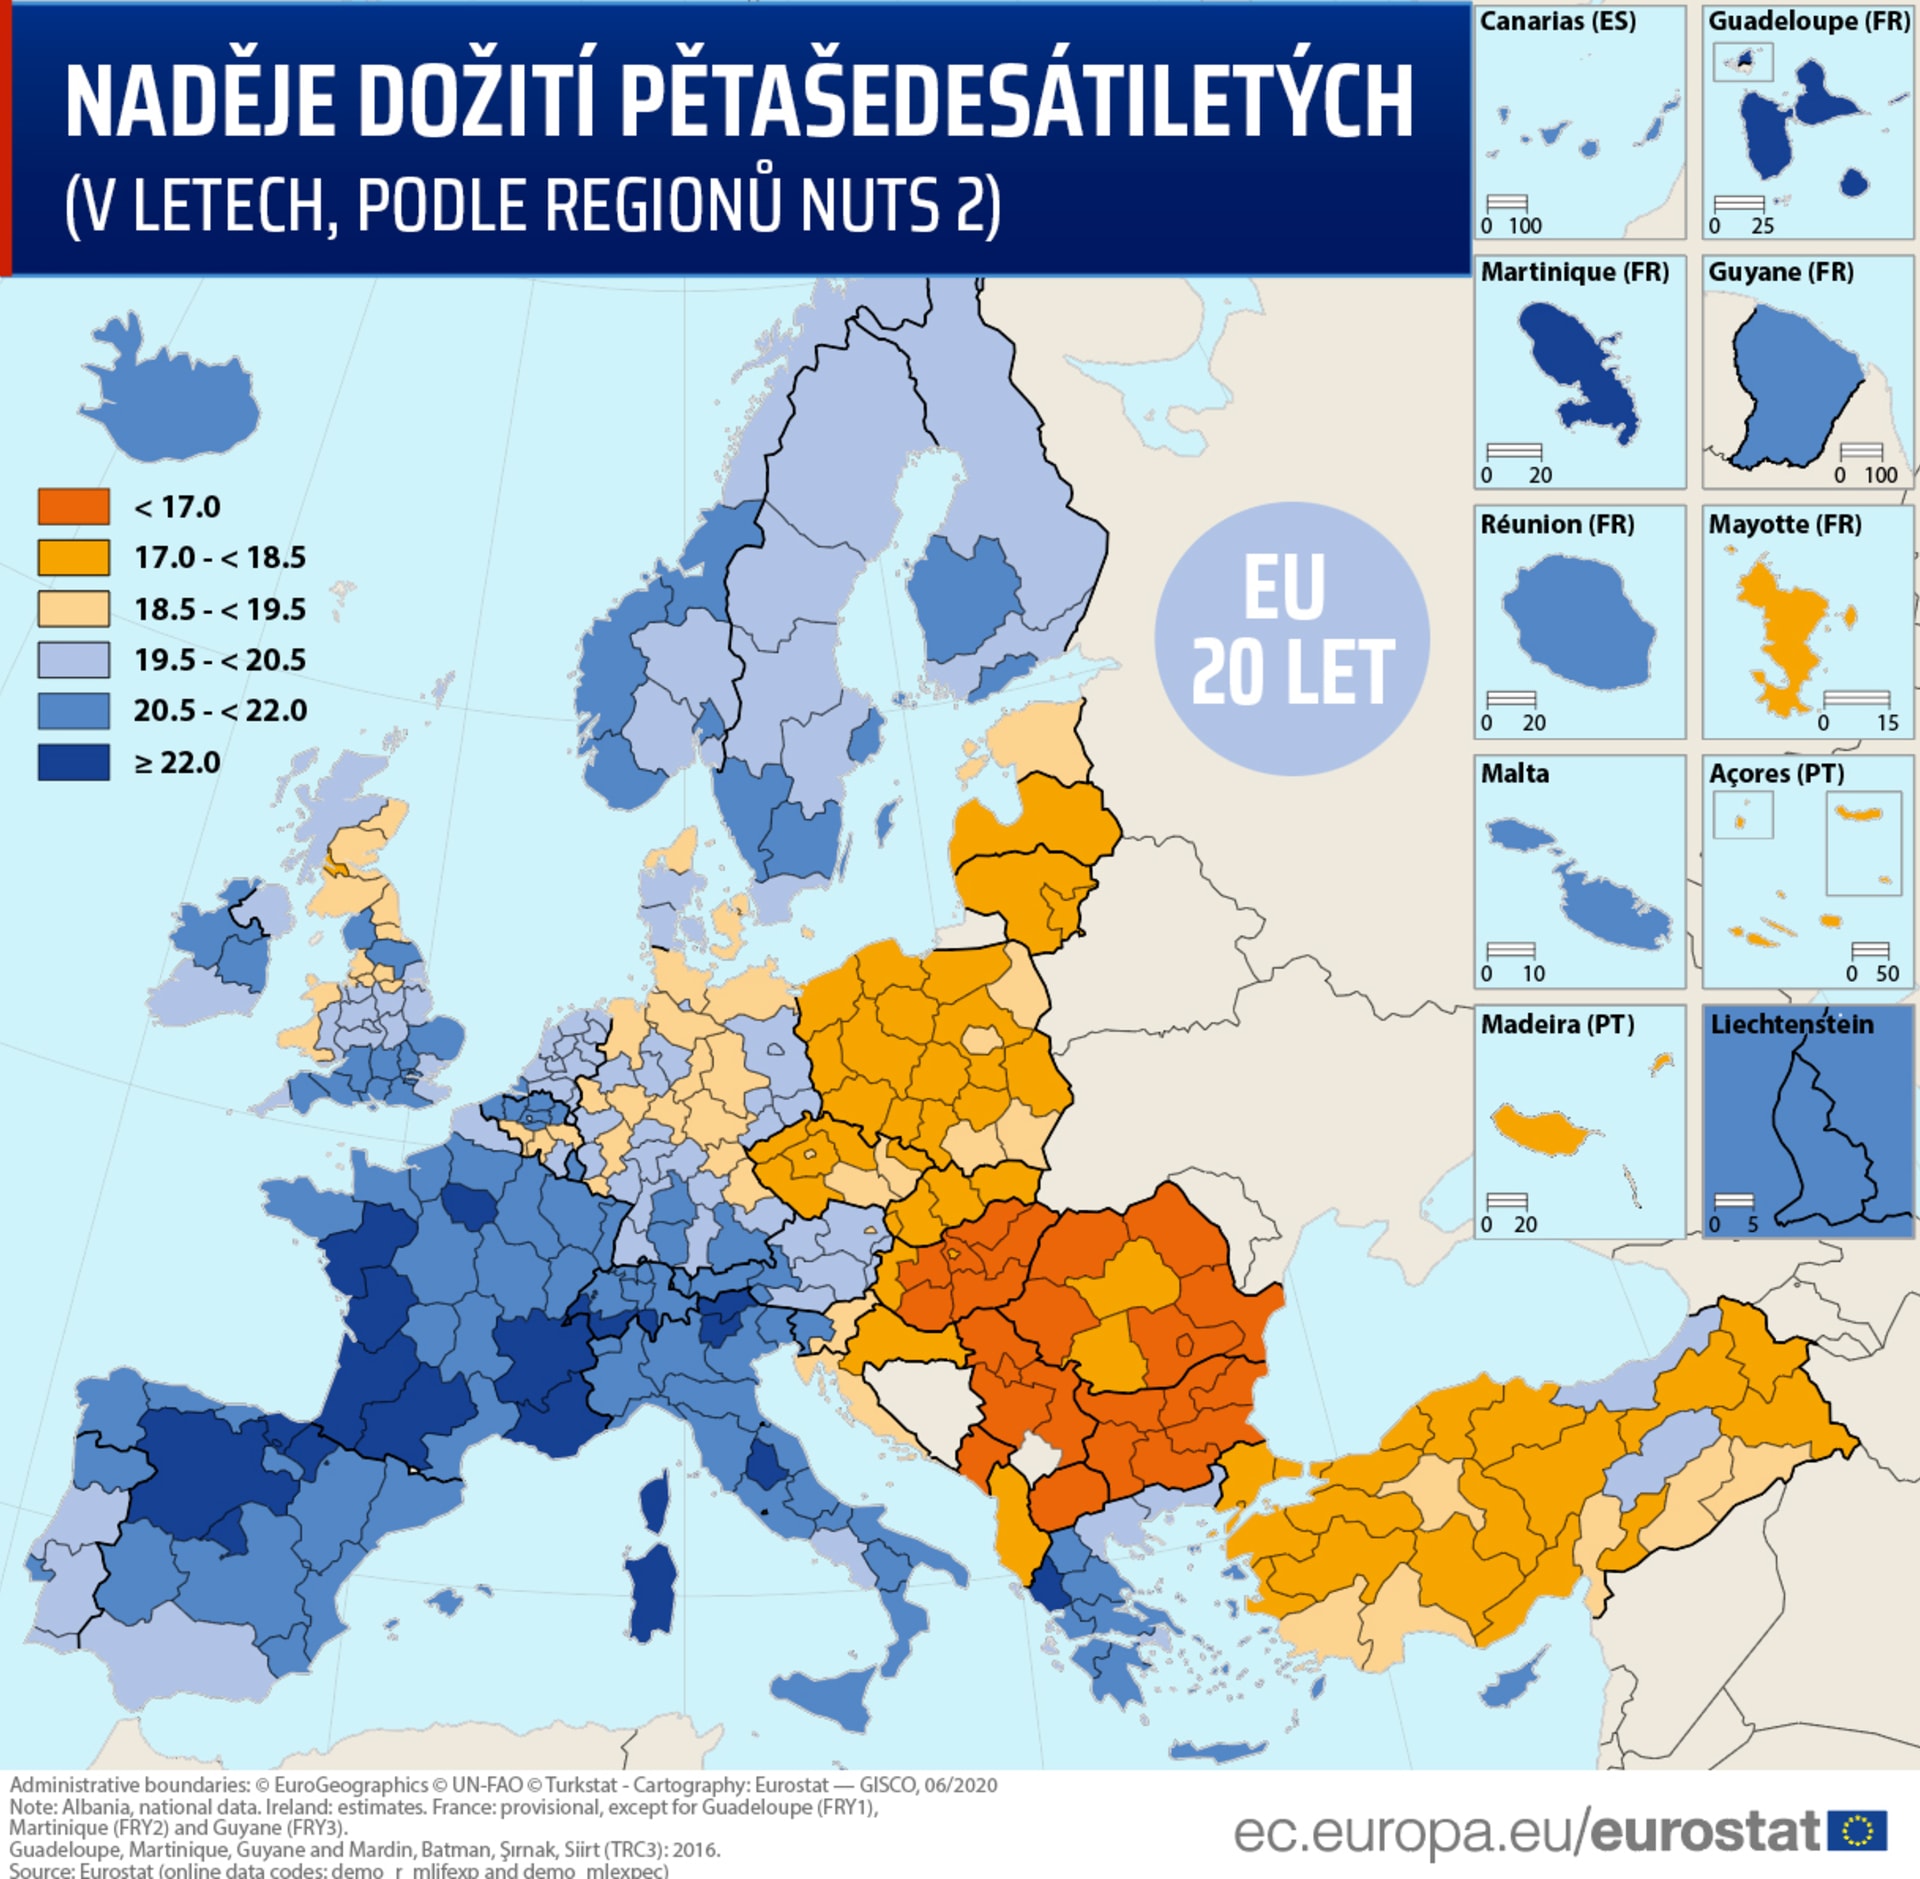 Naděje dožití obyvatel ve věku 65 let v Evropské unii. Mapa udává, kolik let života mají před sebou lidé ve věku 65 let v různých zemích EU. (Zdroj dat: Eurostat)